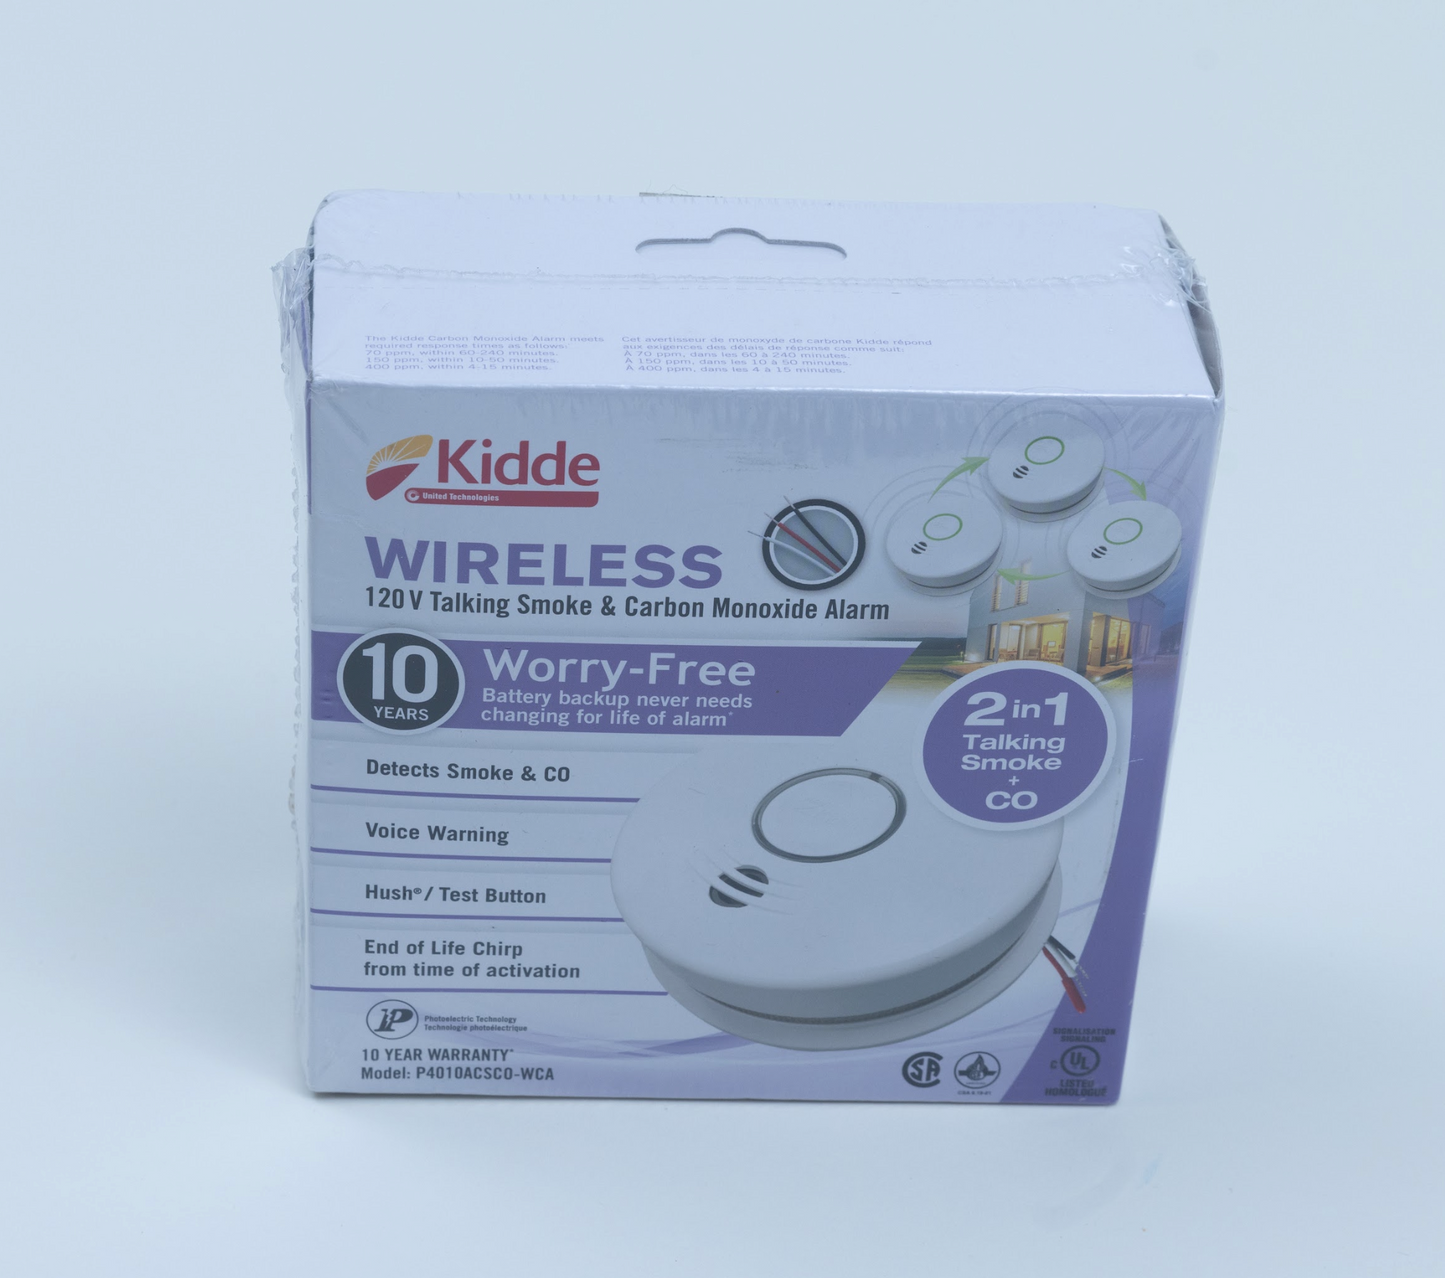 Kidde Worry-Free Wireless Talking Smoke & Carbon Monoxide Alarm